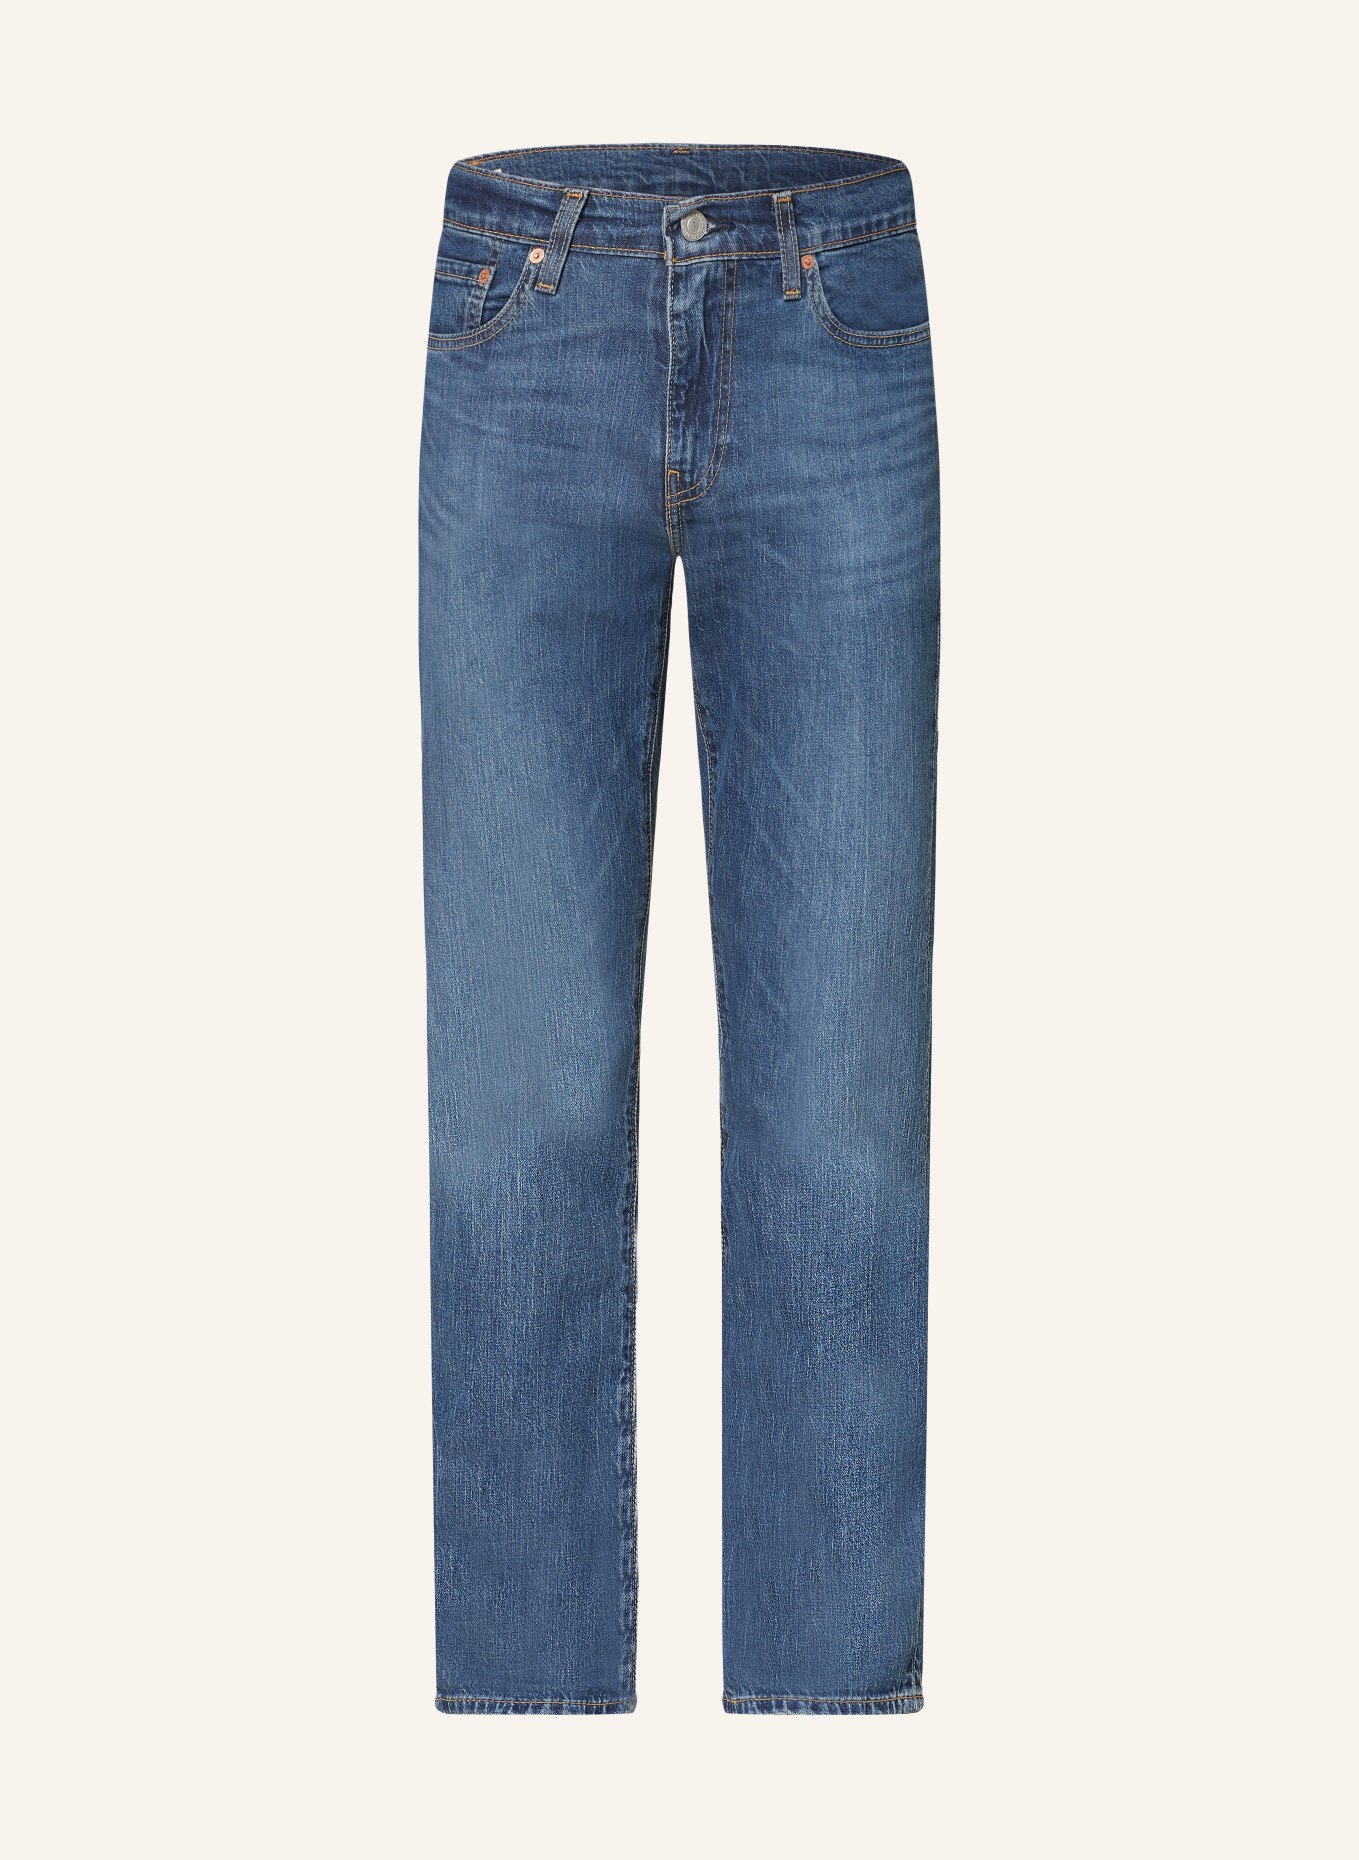 Levi's® Jeans 511 slim fit, Color: 49 Med Indigo - Worn In (Image 1)